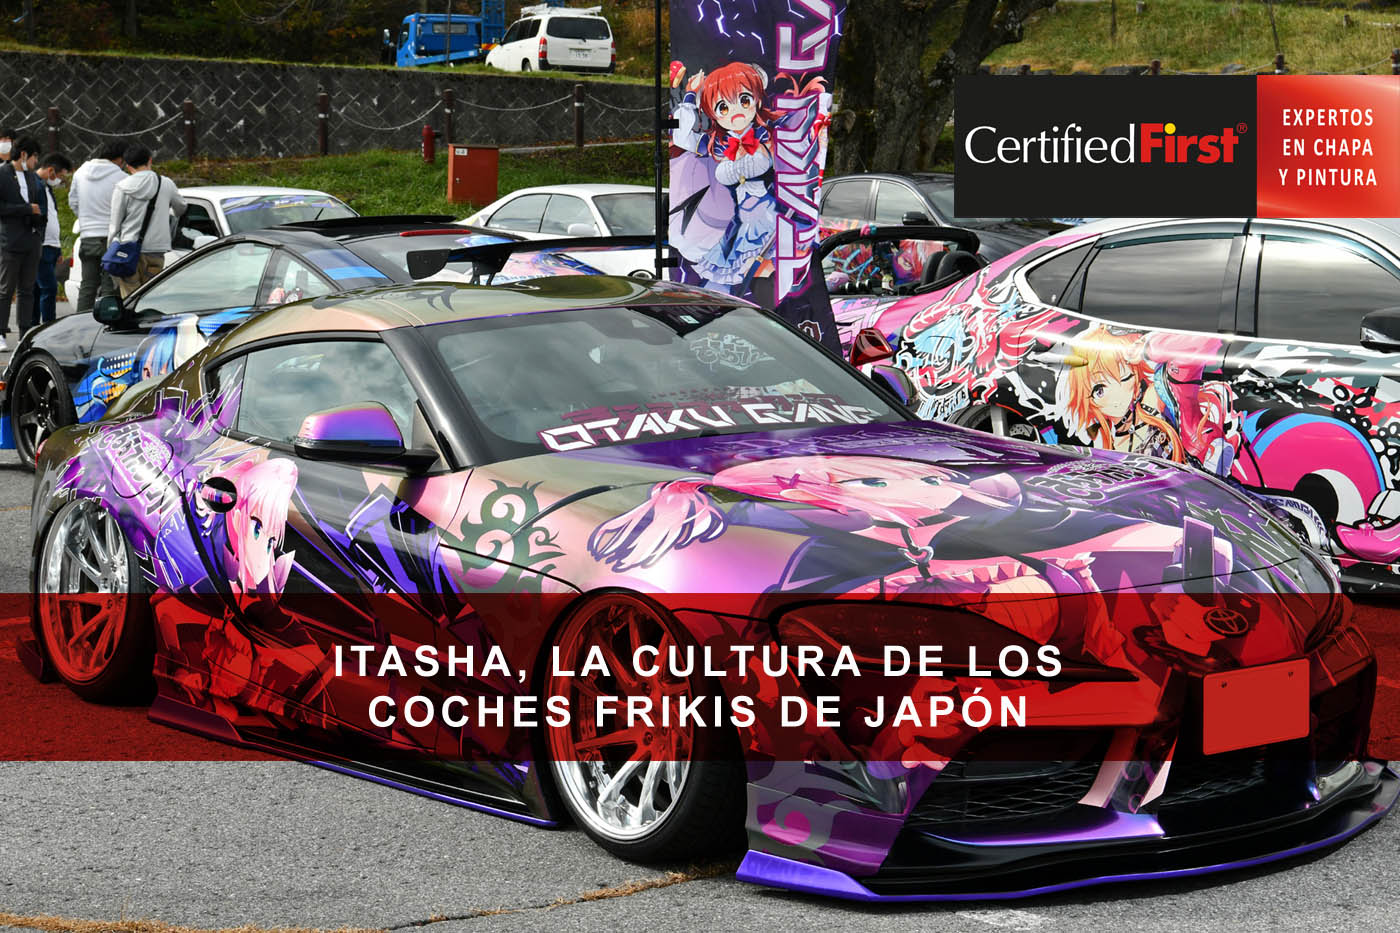 Itasha, la cultura de los coches frikis de Japón